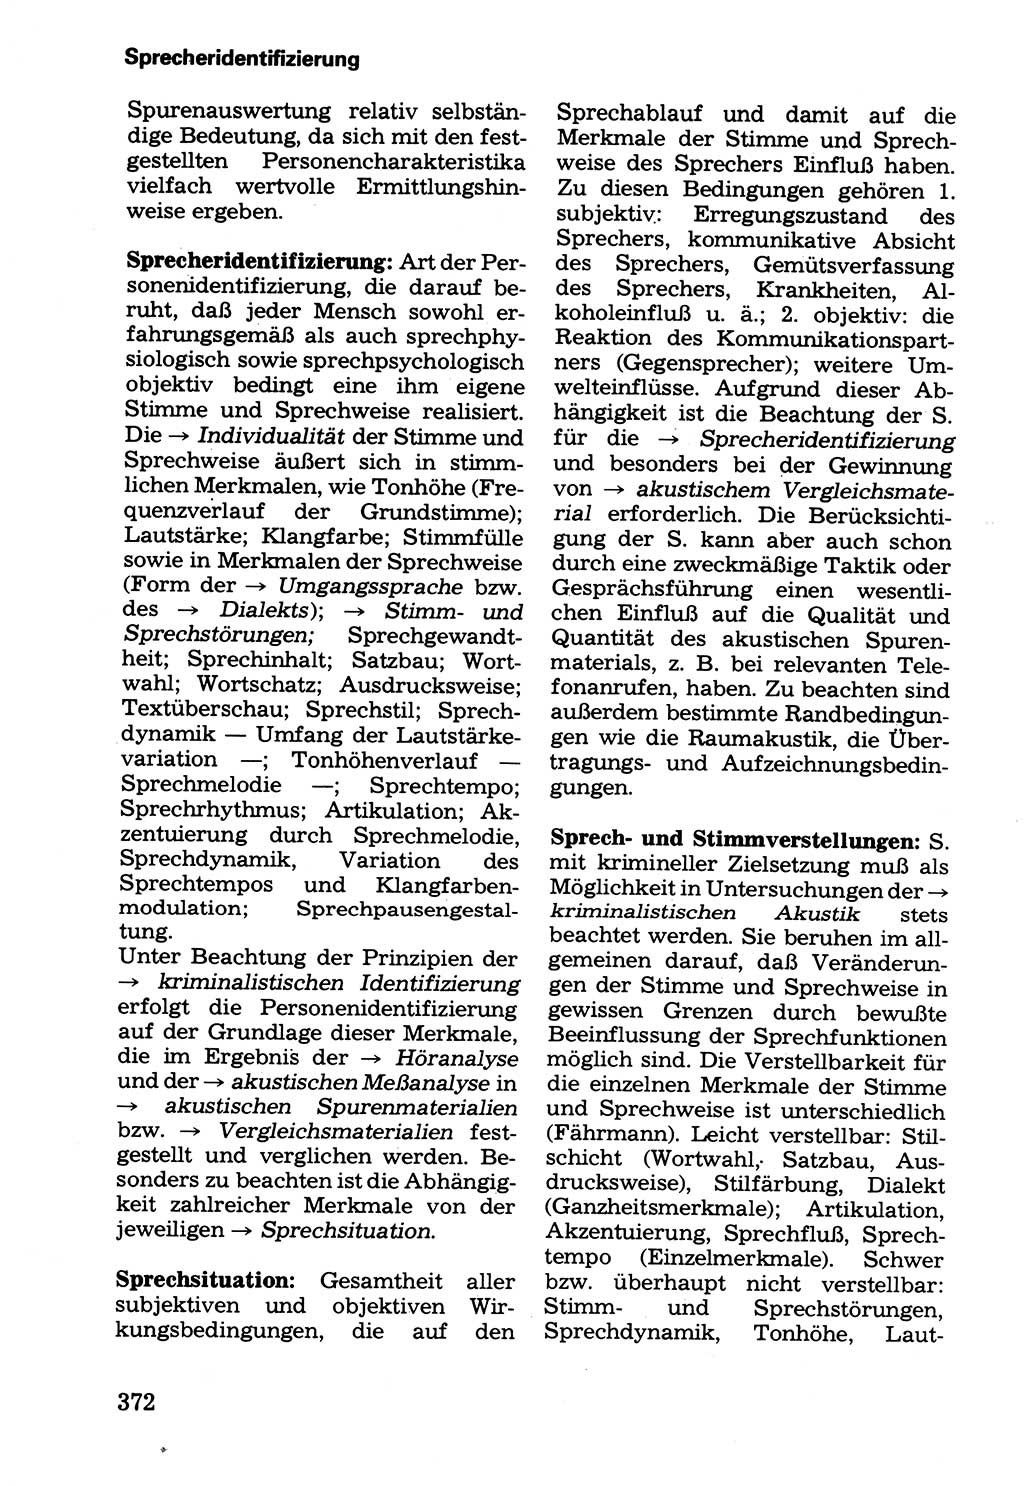 Wörterbuch der sozialistischen Kriminalistik [Deutsche Demokratische Republik (DDR)] 1981, Seite 372 (Wb. soz. Krim. DDR 1981, S. 372)